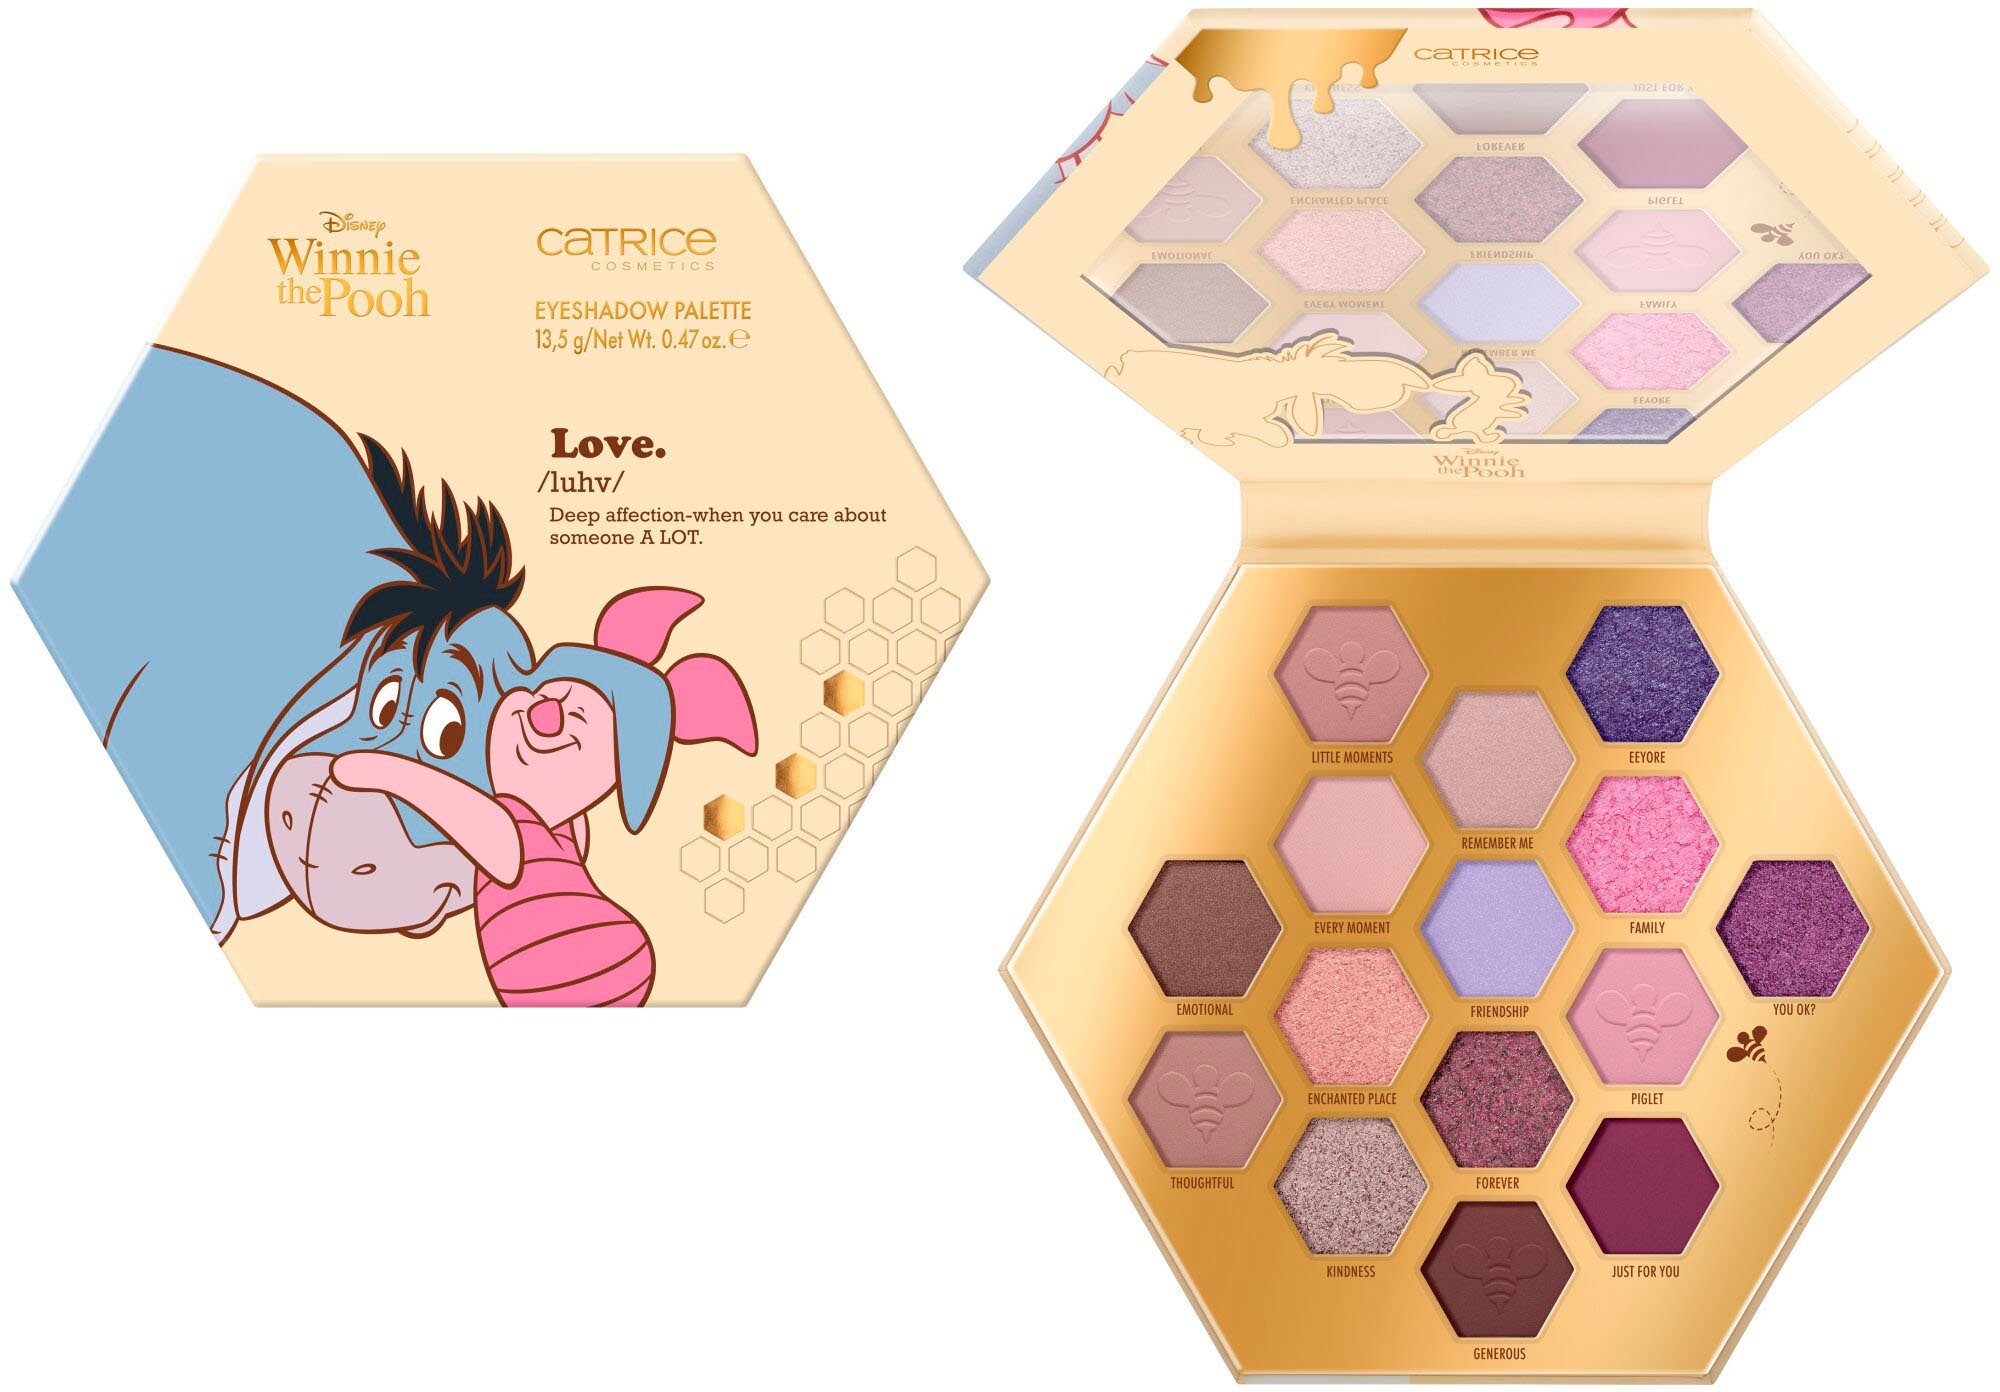 Catrice Lidschatten-Palette Disney Winnie the Pooh Eyeshadow Palette, Augen-Make-Up mit 15 abgestimmten Shades, vegan | Lidschatten